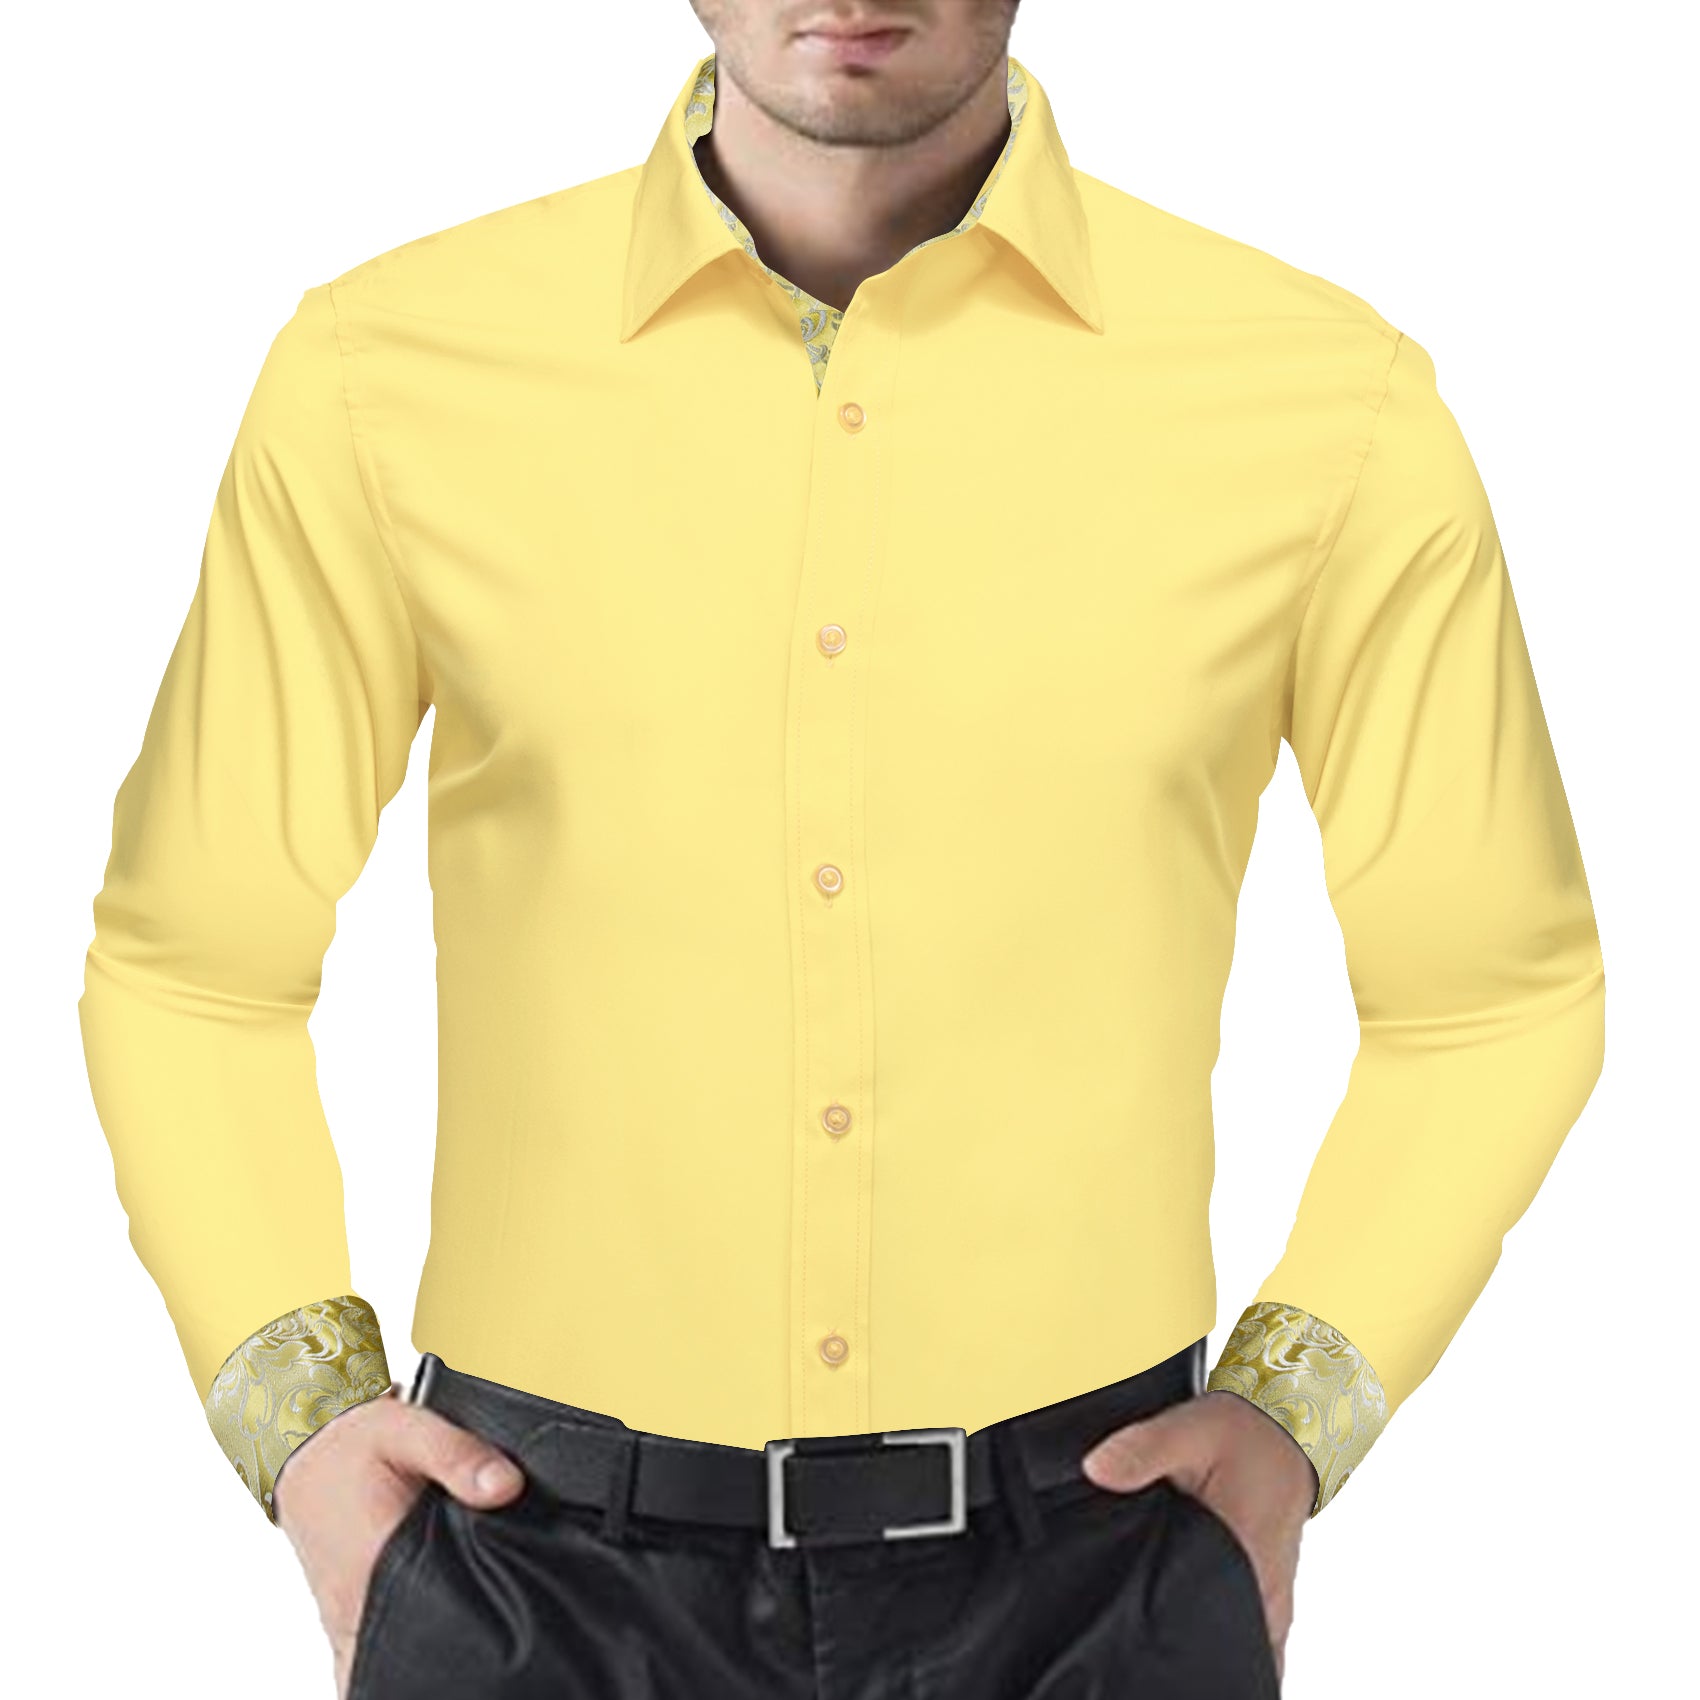 Barry.wang Formal Light Yellow Gold Splicing Men's Business Shirt